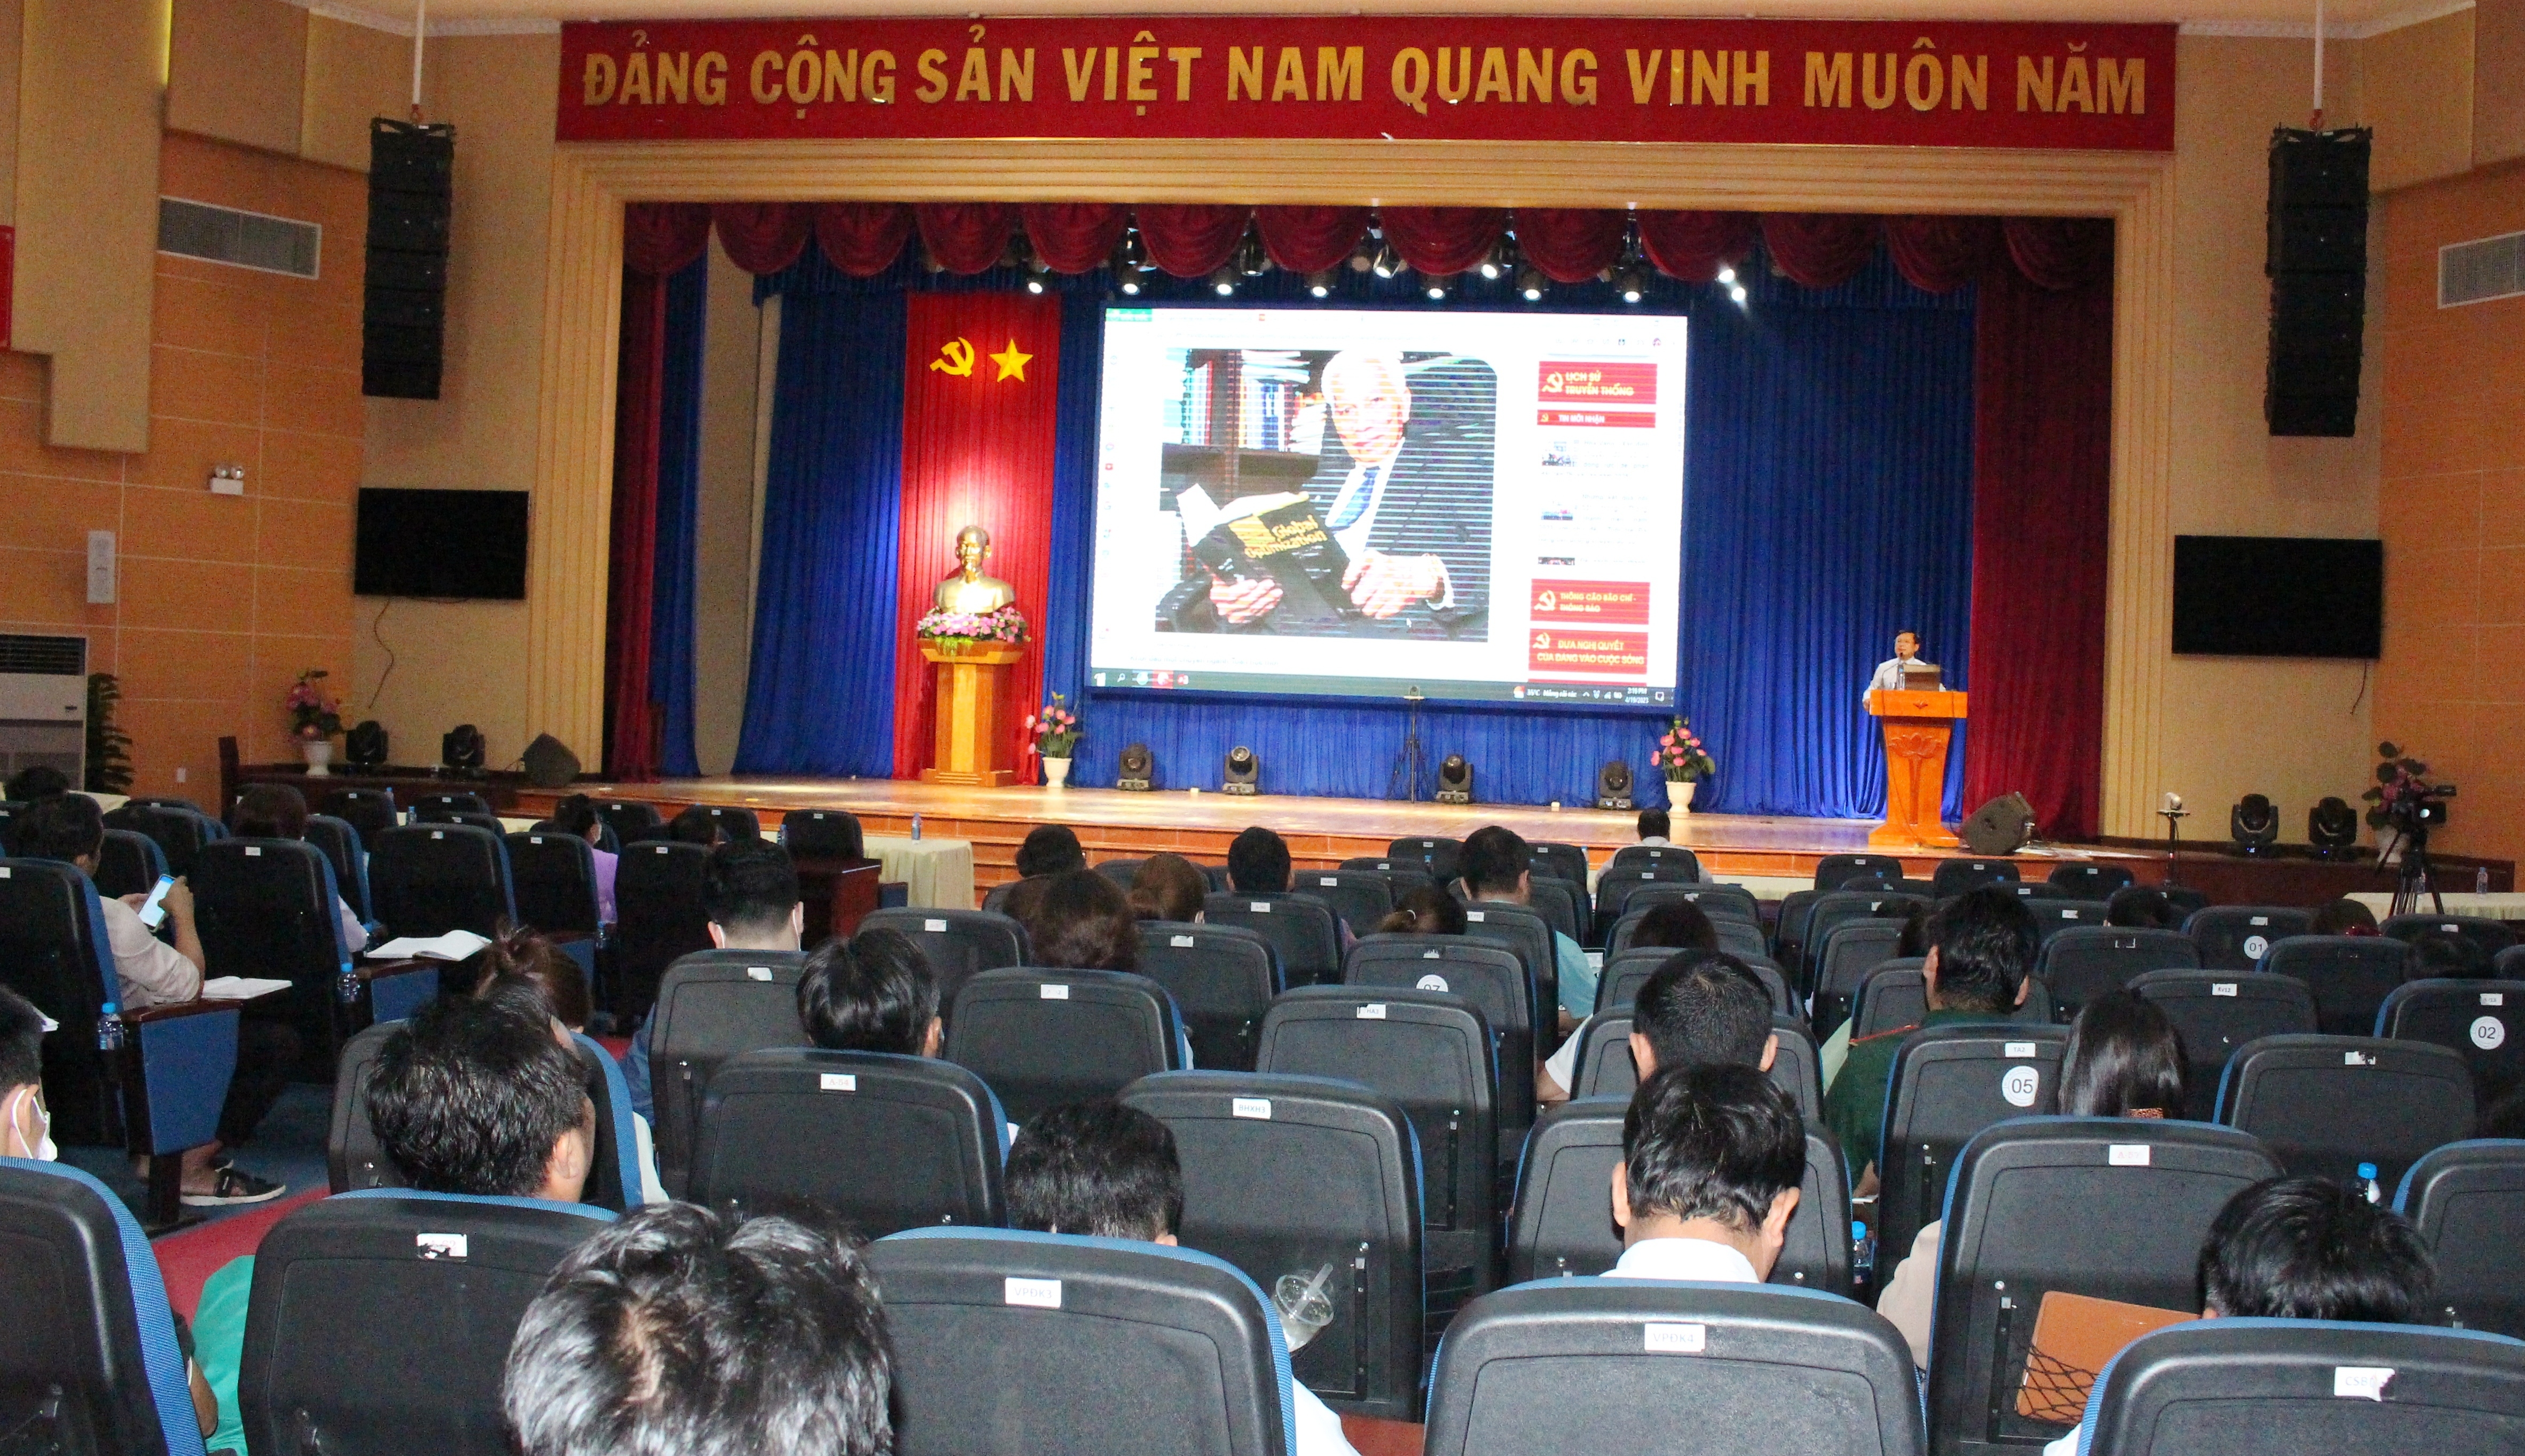 Tiến sĩ Vũ Trung Kiên - Phó trưởng Khoa Xây dựng Đảng, Học viện Chính trị quốc gia Hồ Chí Minh khu vực II trình bày nội dung chuyên đề năm 2023